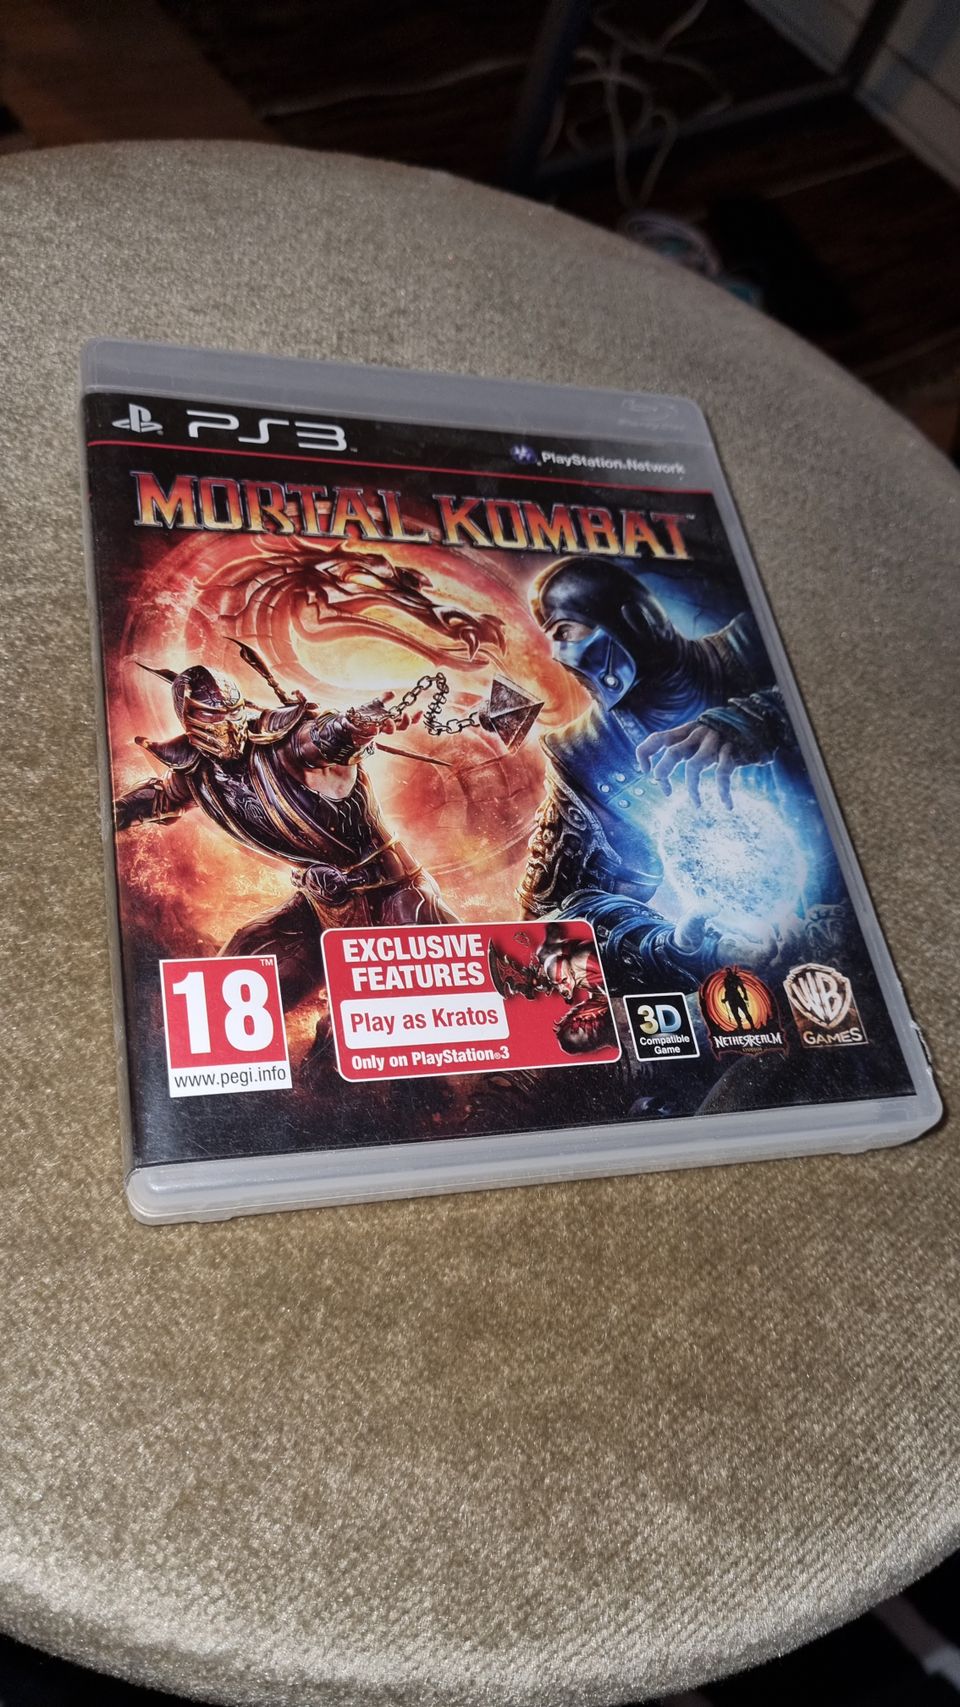 PS3/Playstation 3: Mortal Kombat